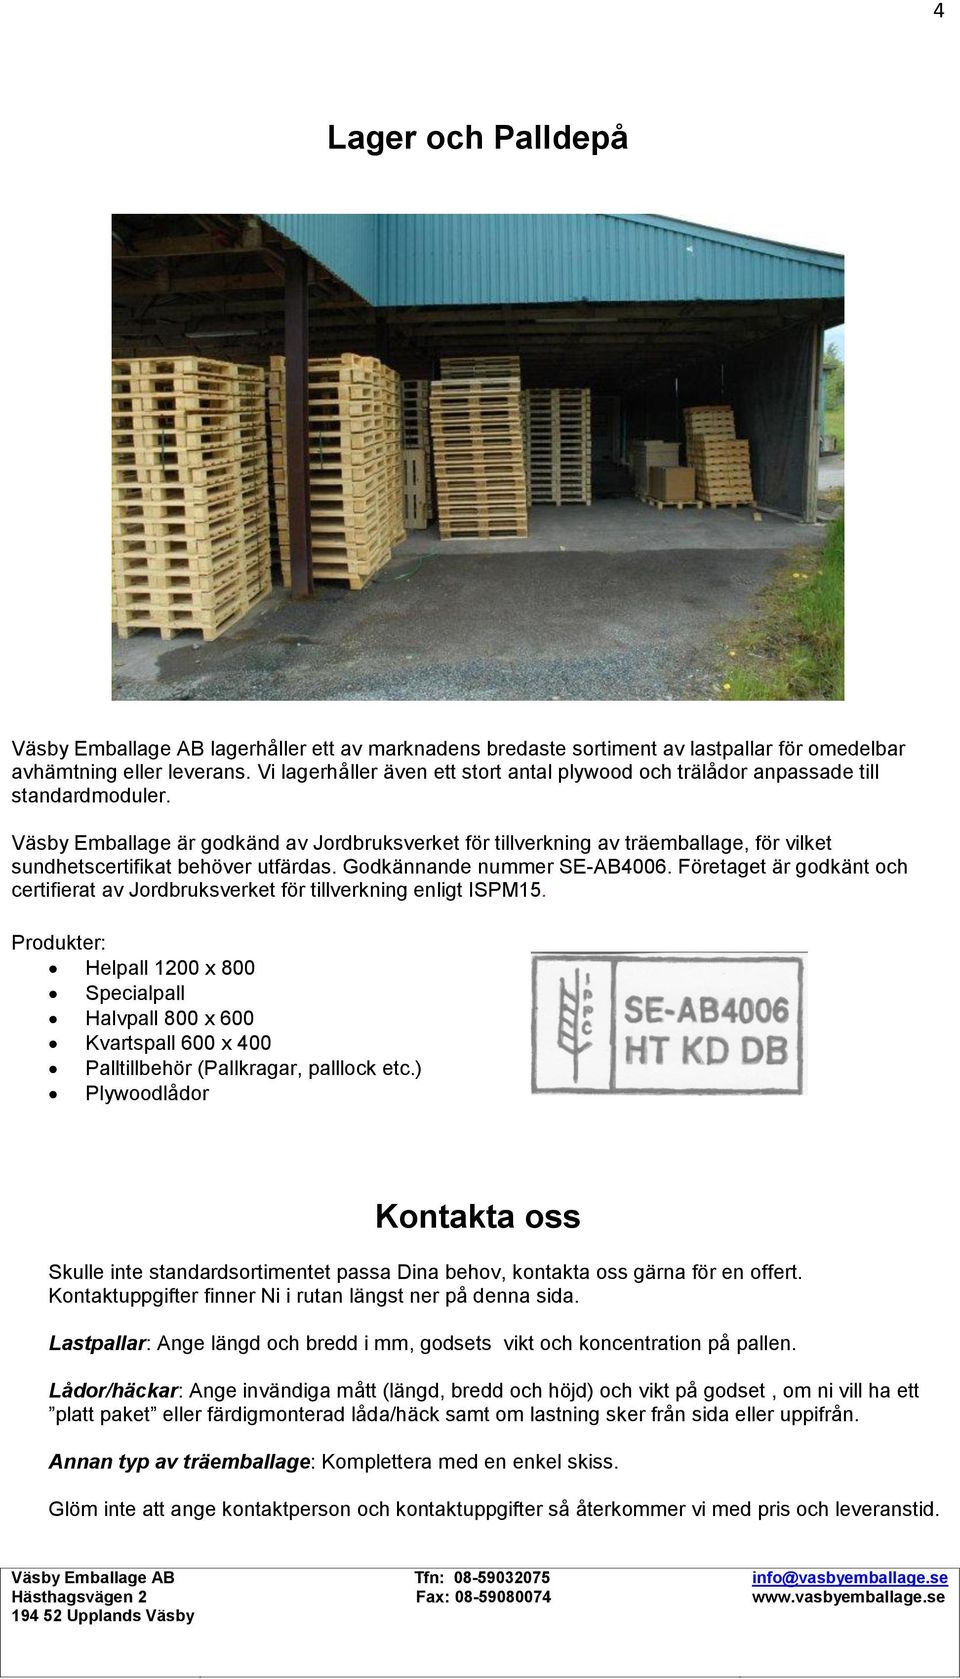 Väsby Emballage är godkänd av Jordbruksverket för tillverkning av träemballage, för vilket sundhetscertifikat behöver utfärdas. Godkännande nummer SE-AB4006.